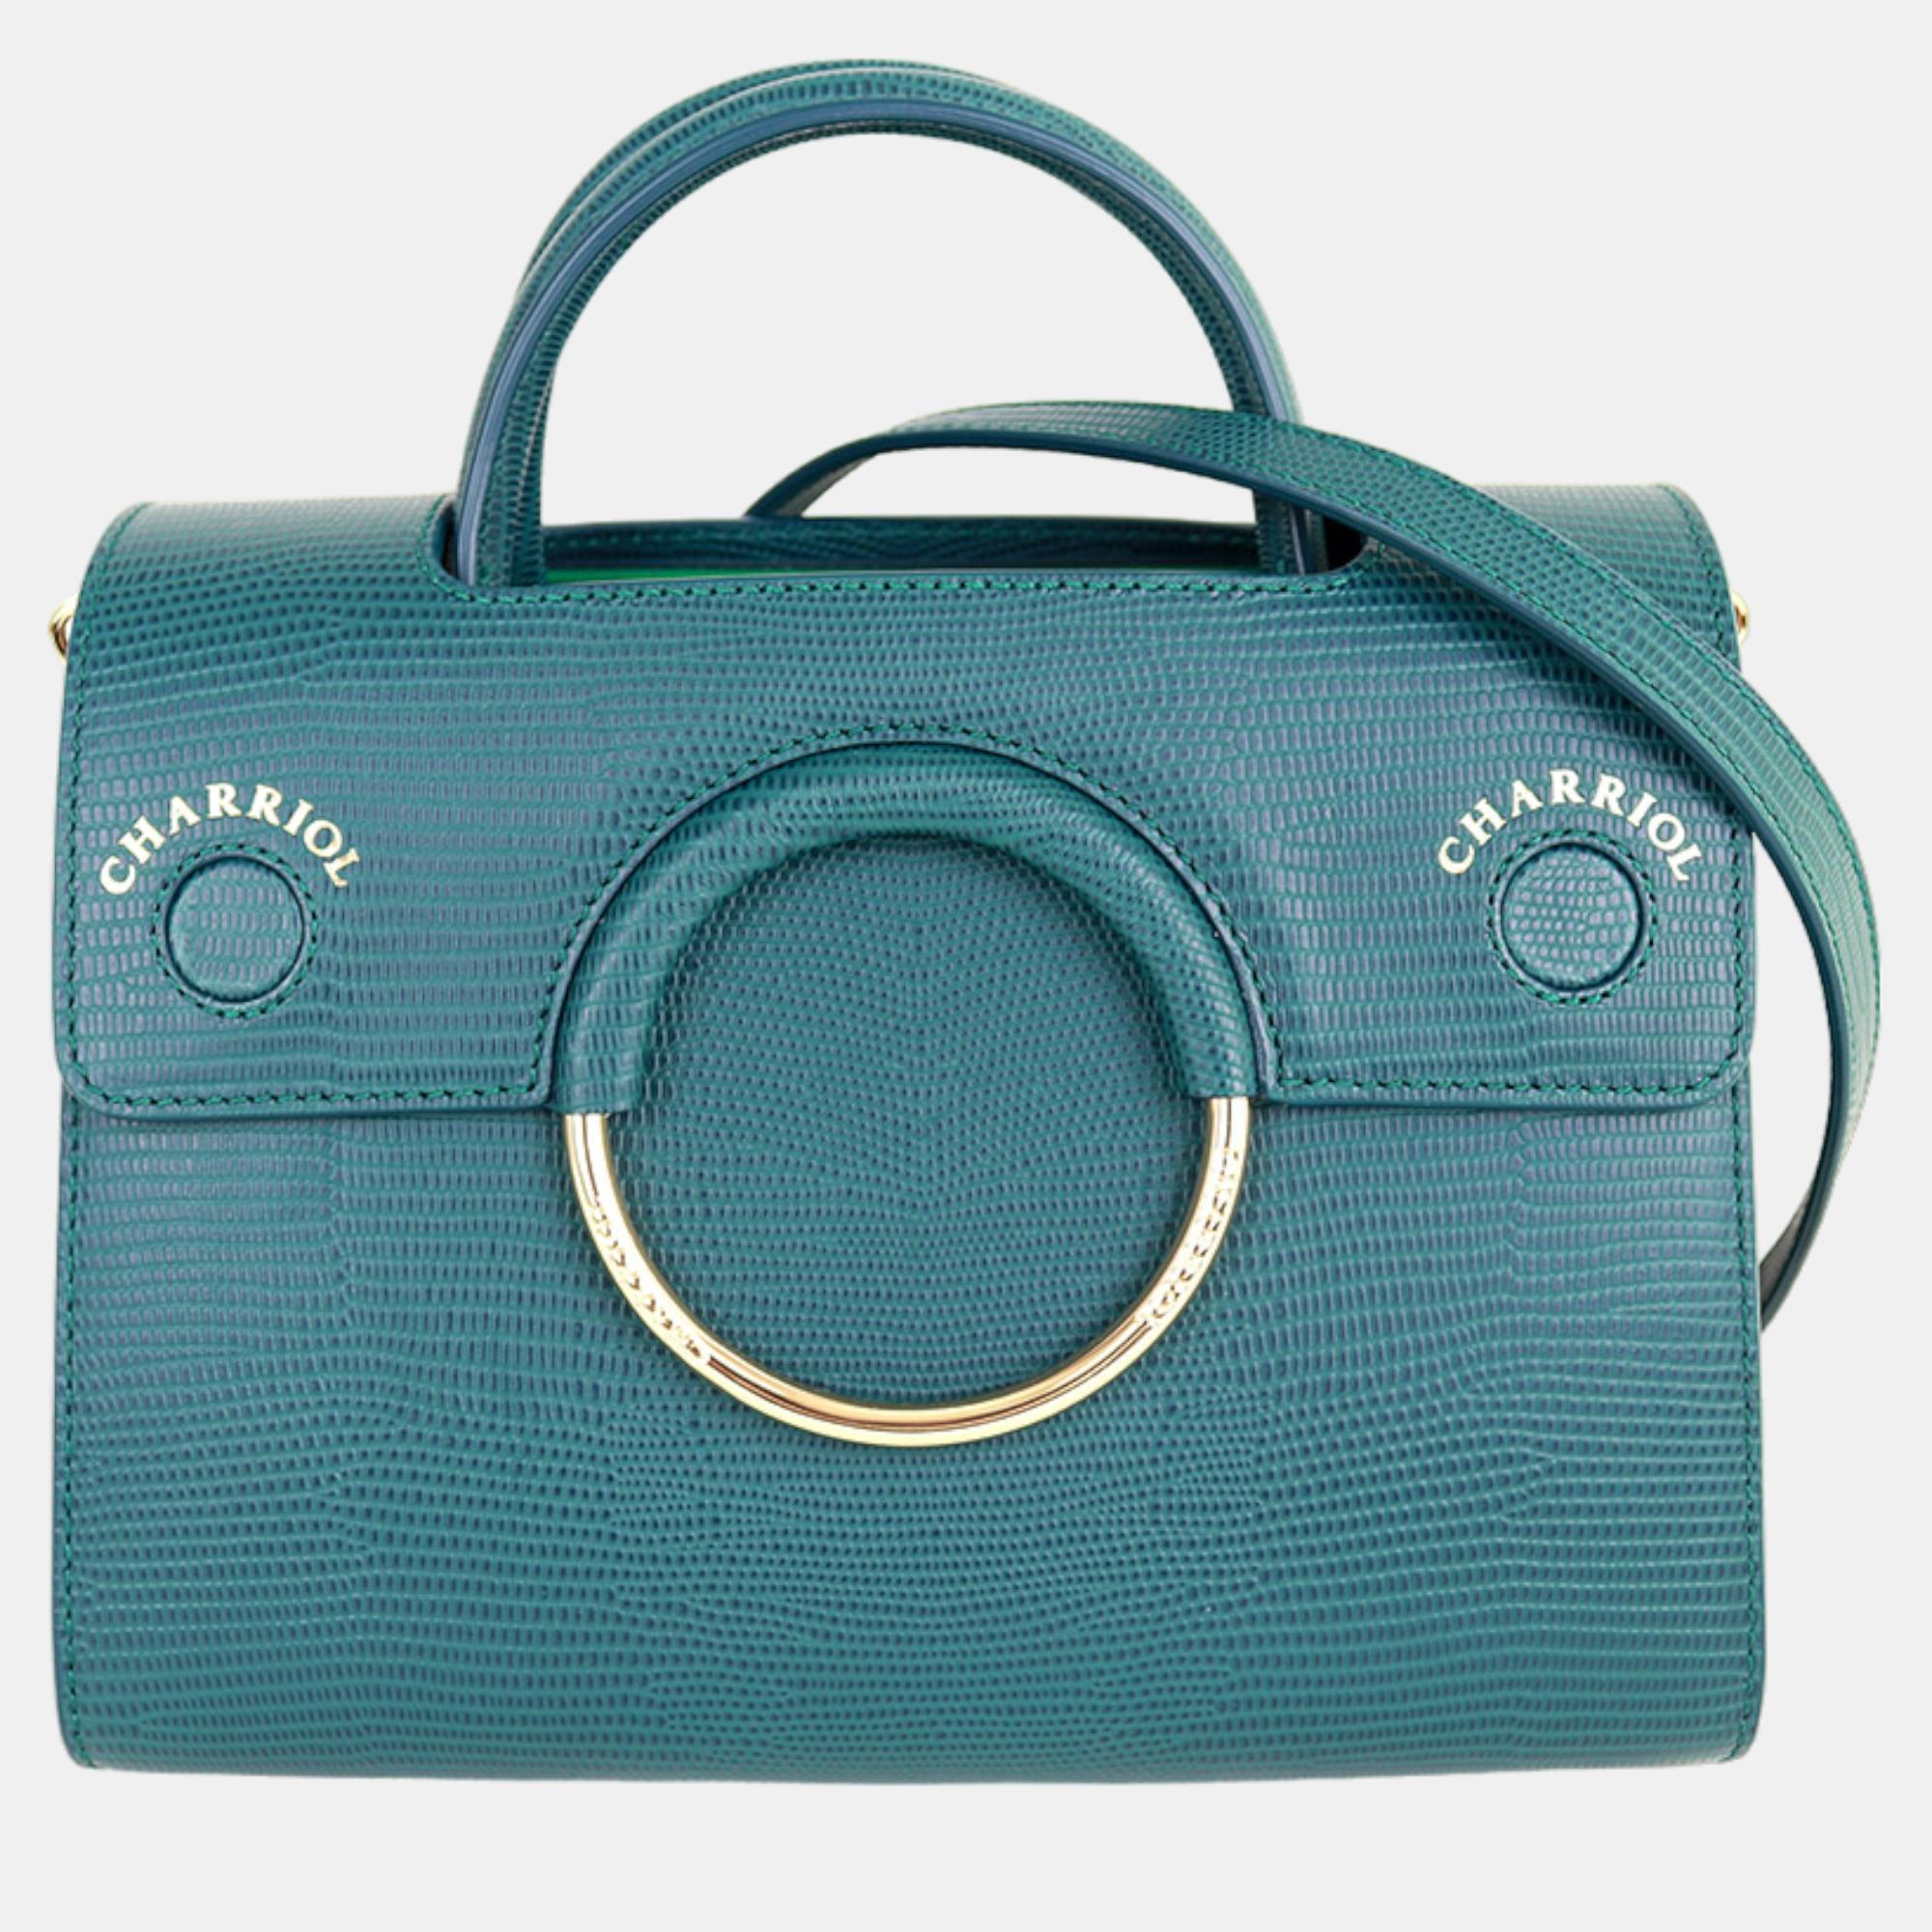 Pre-owned Charriol Green Leather Chameleon Handbag